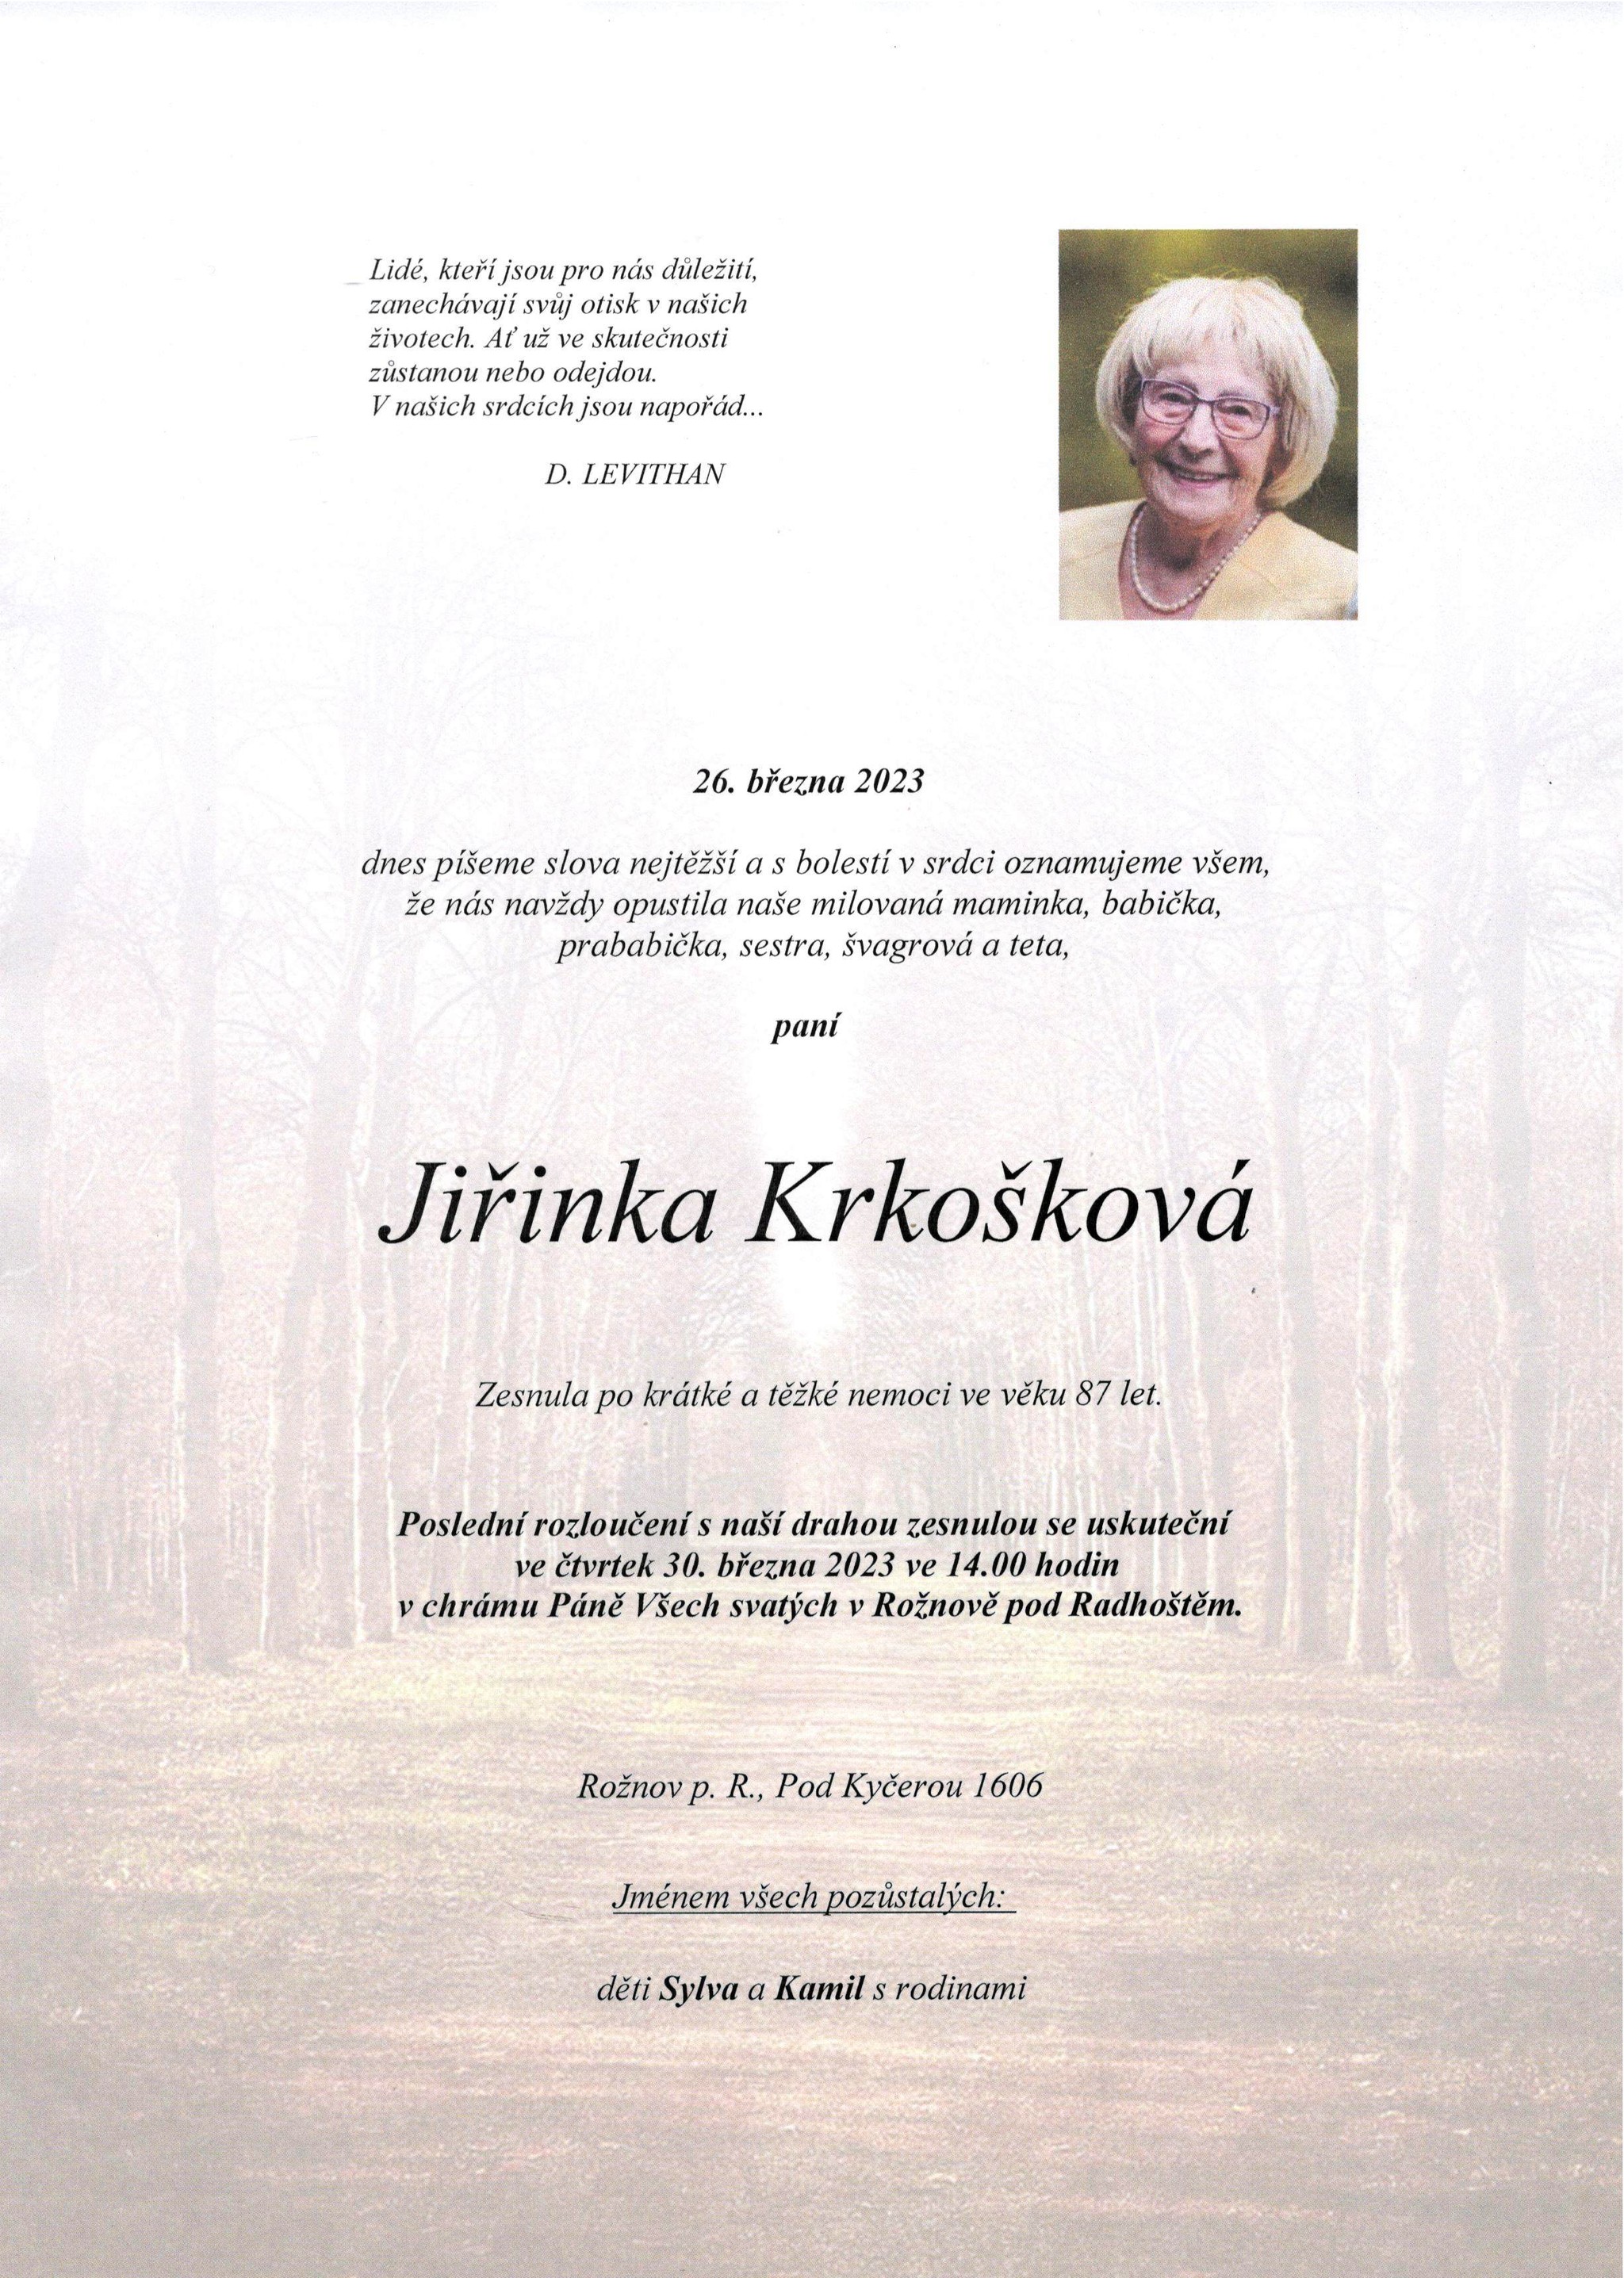 Jiřinka Krkošková